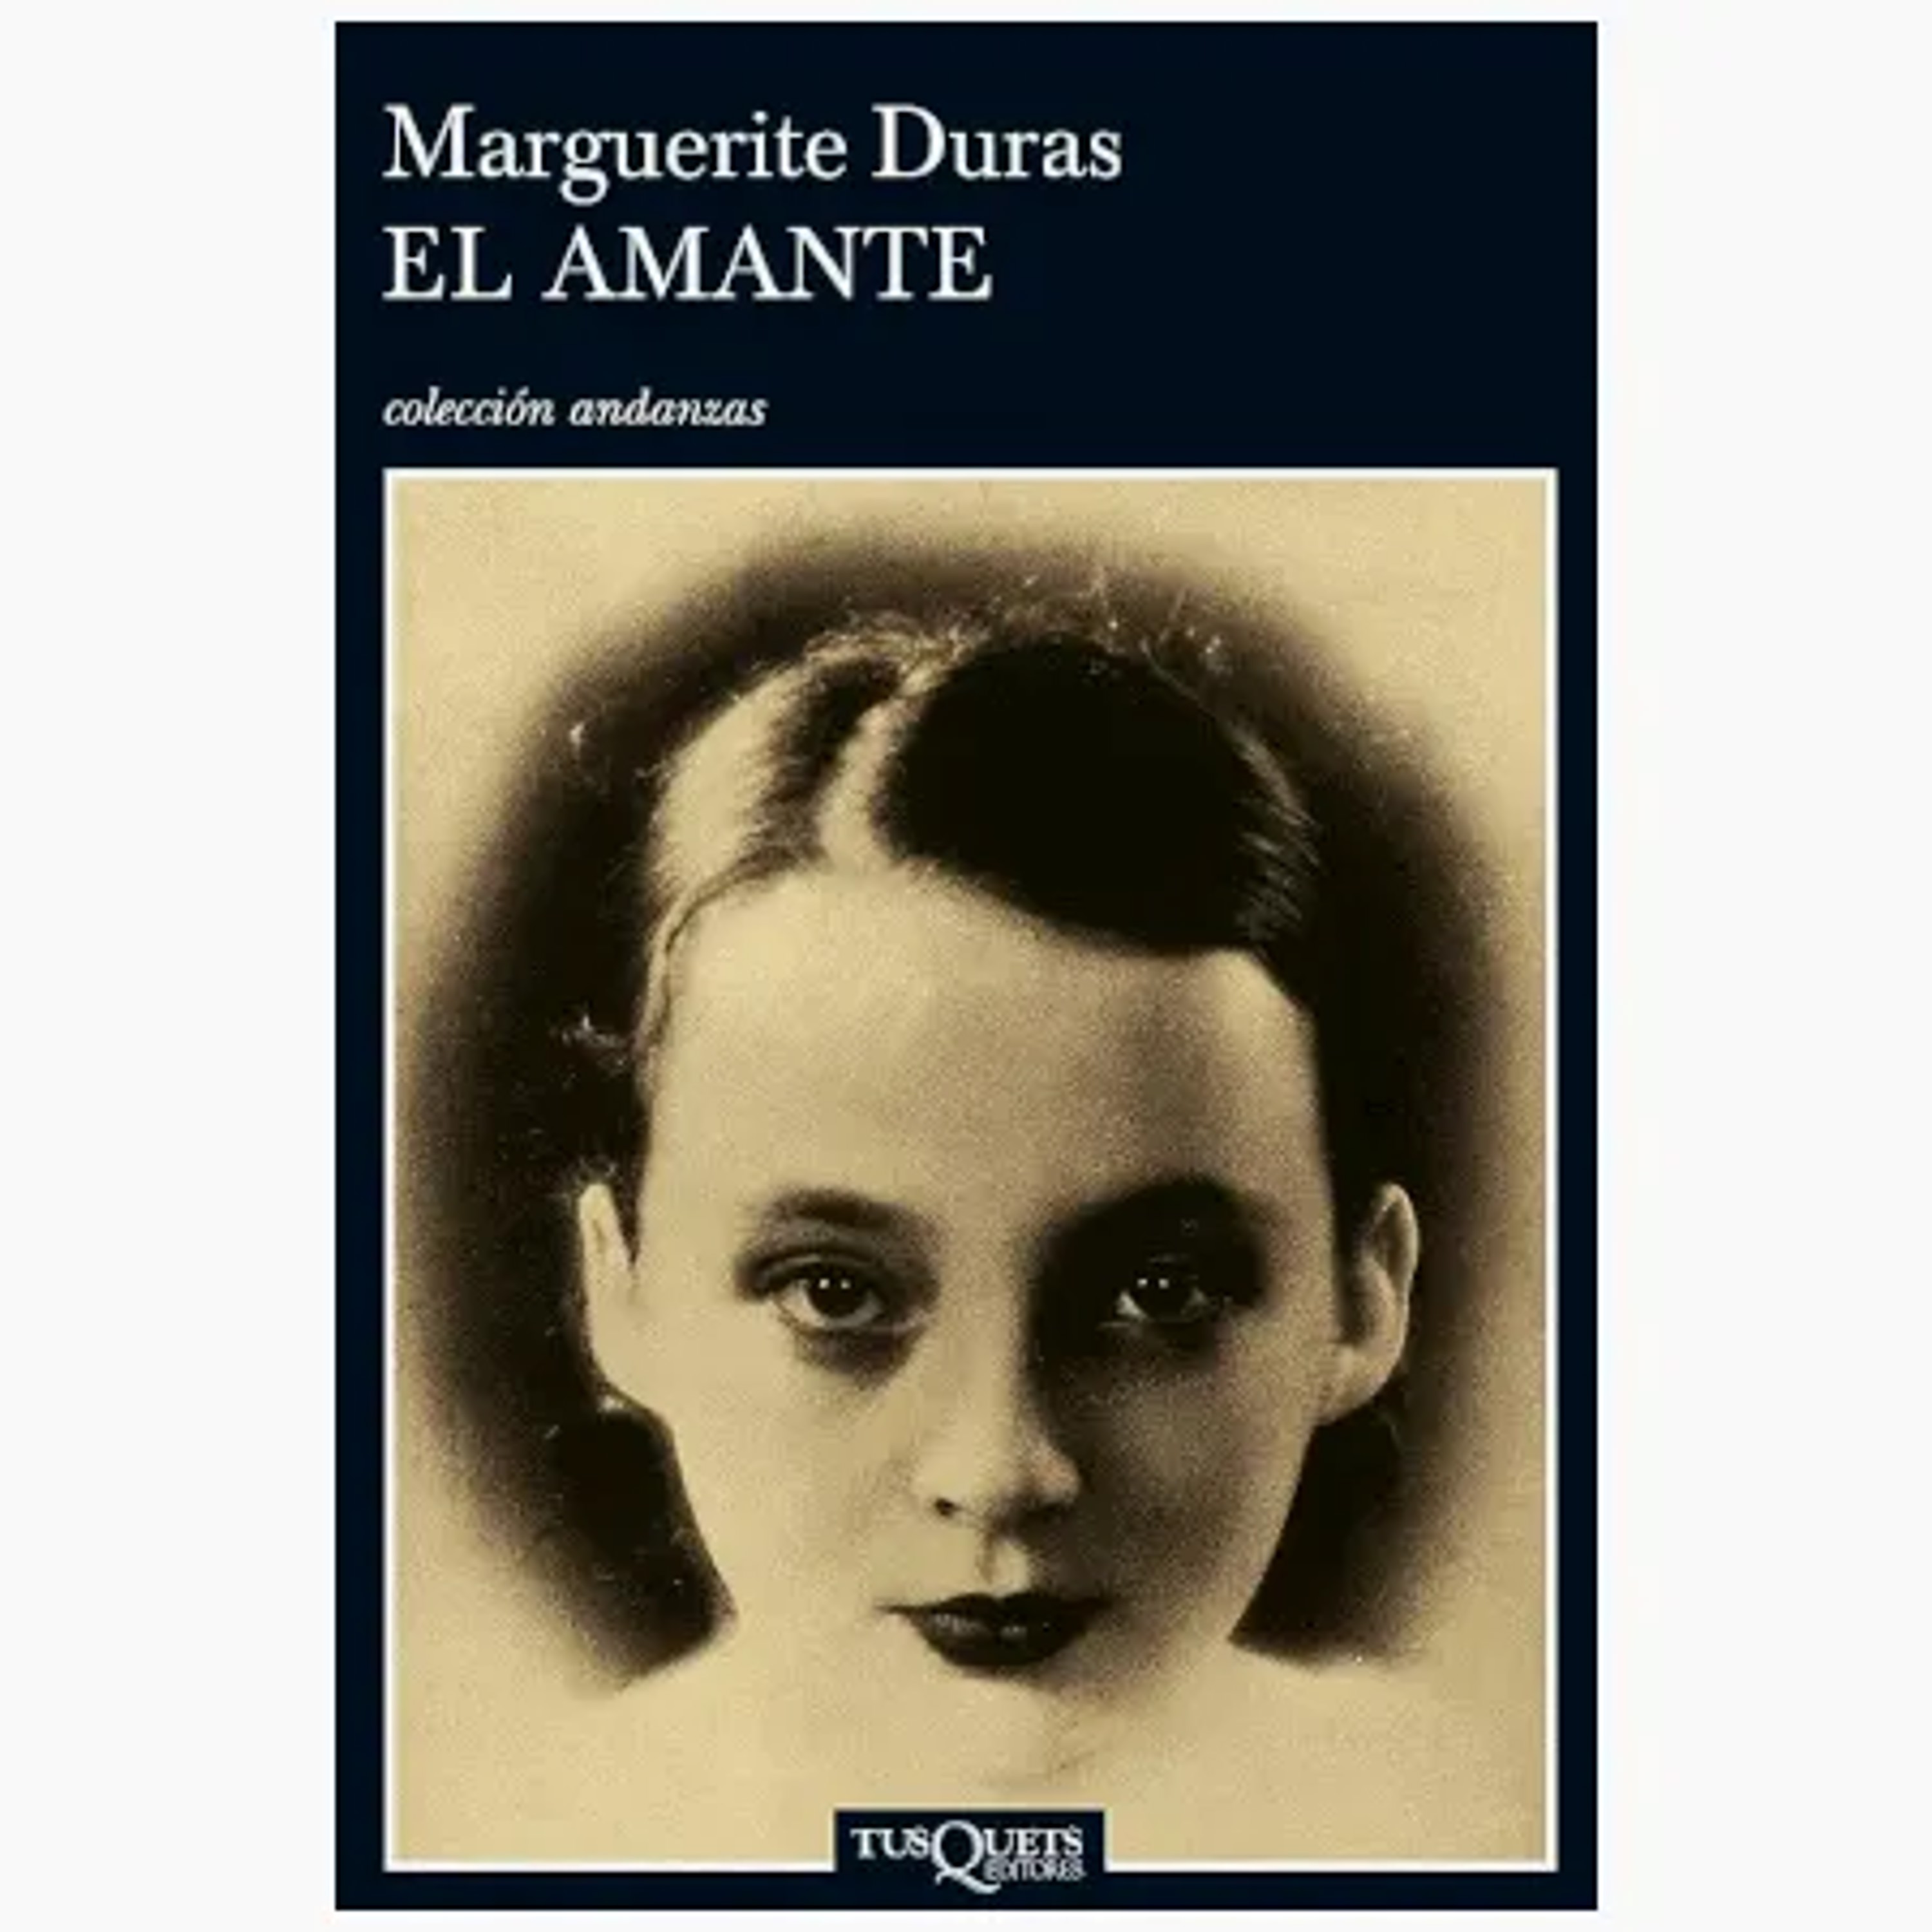 Resumen del libro El amante de Marguerite Duras